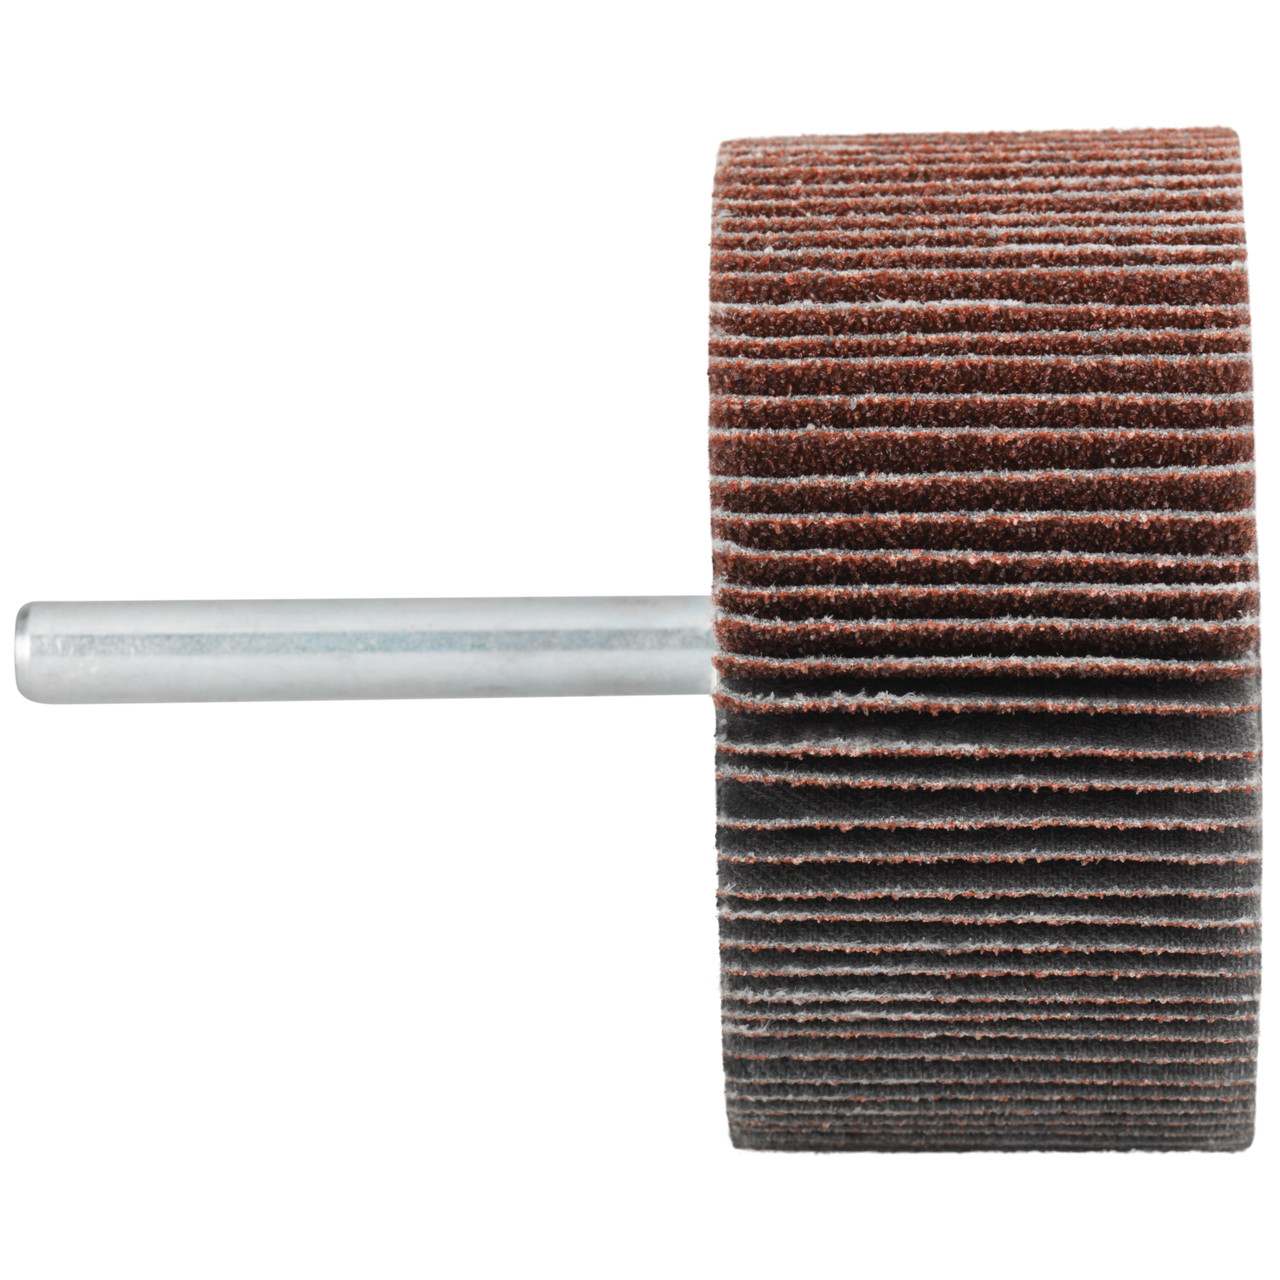 Tyrolit A-P01 C X Pennen DxD 30x10 Voor staal, roestvast staal en non-ferrometalen, P80, vorm: 52LA, Art. 909397